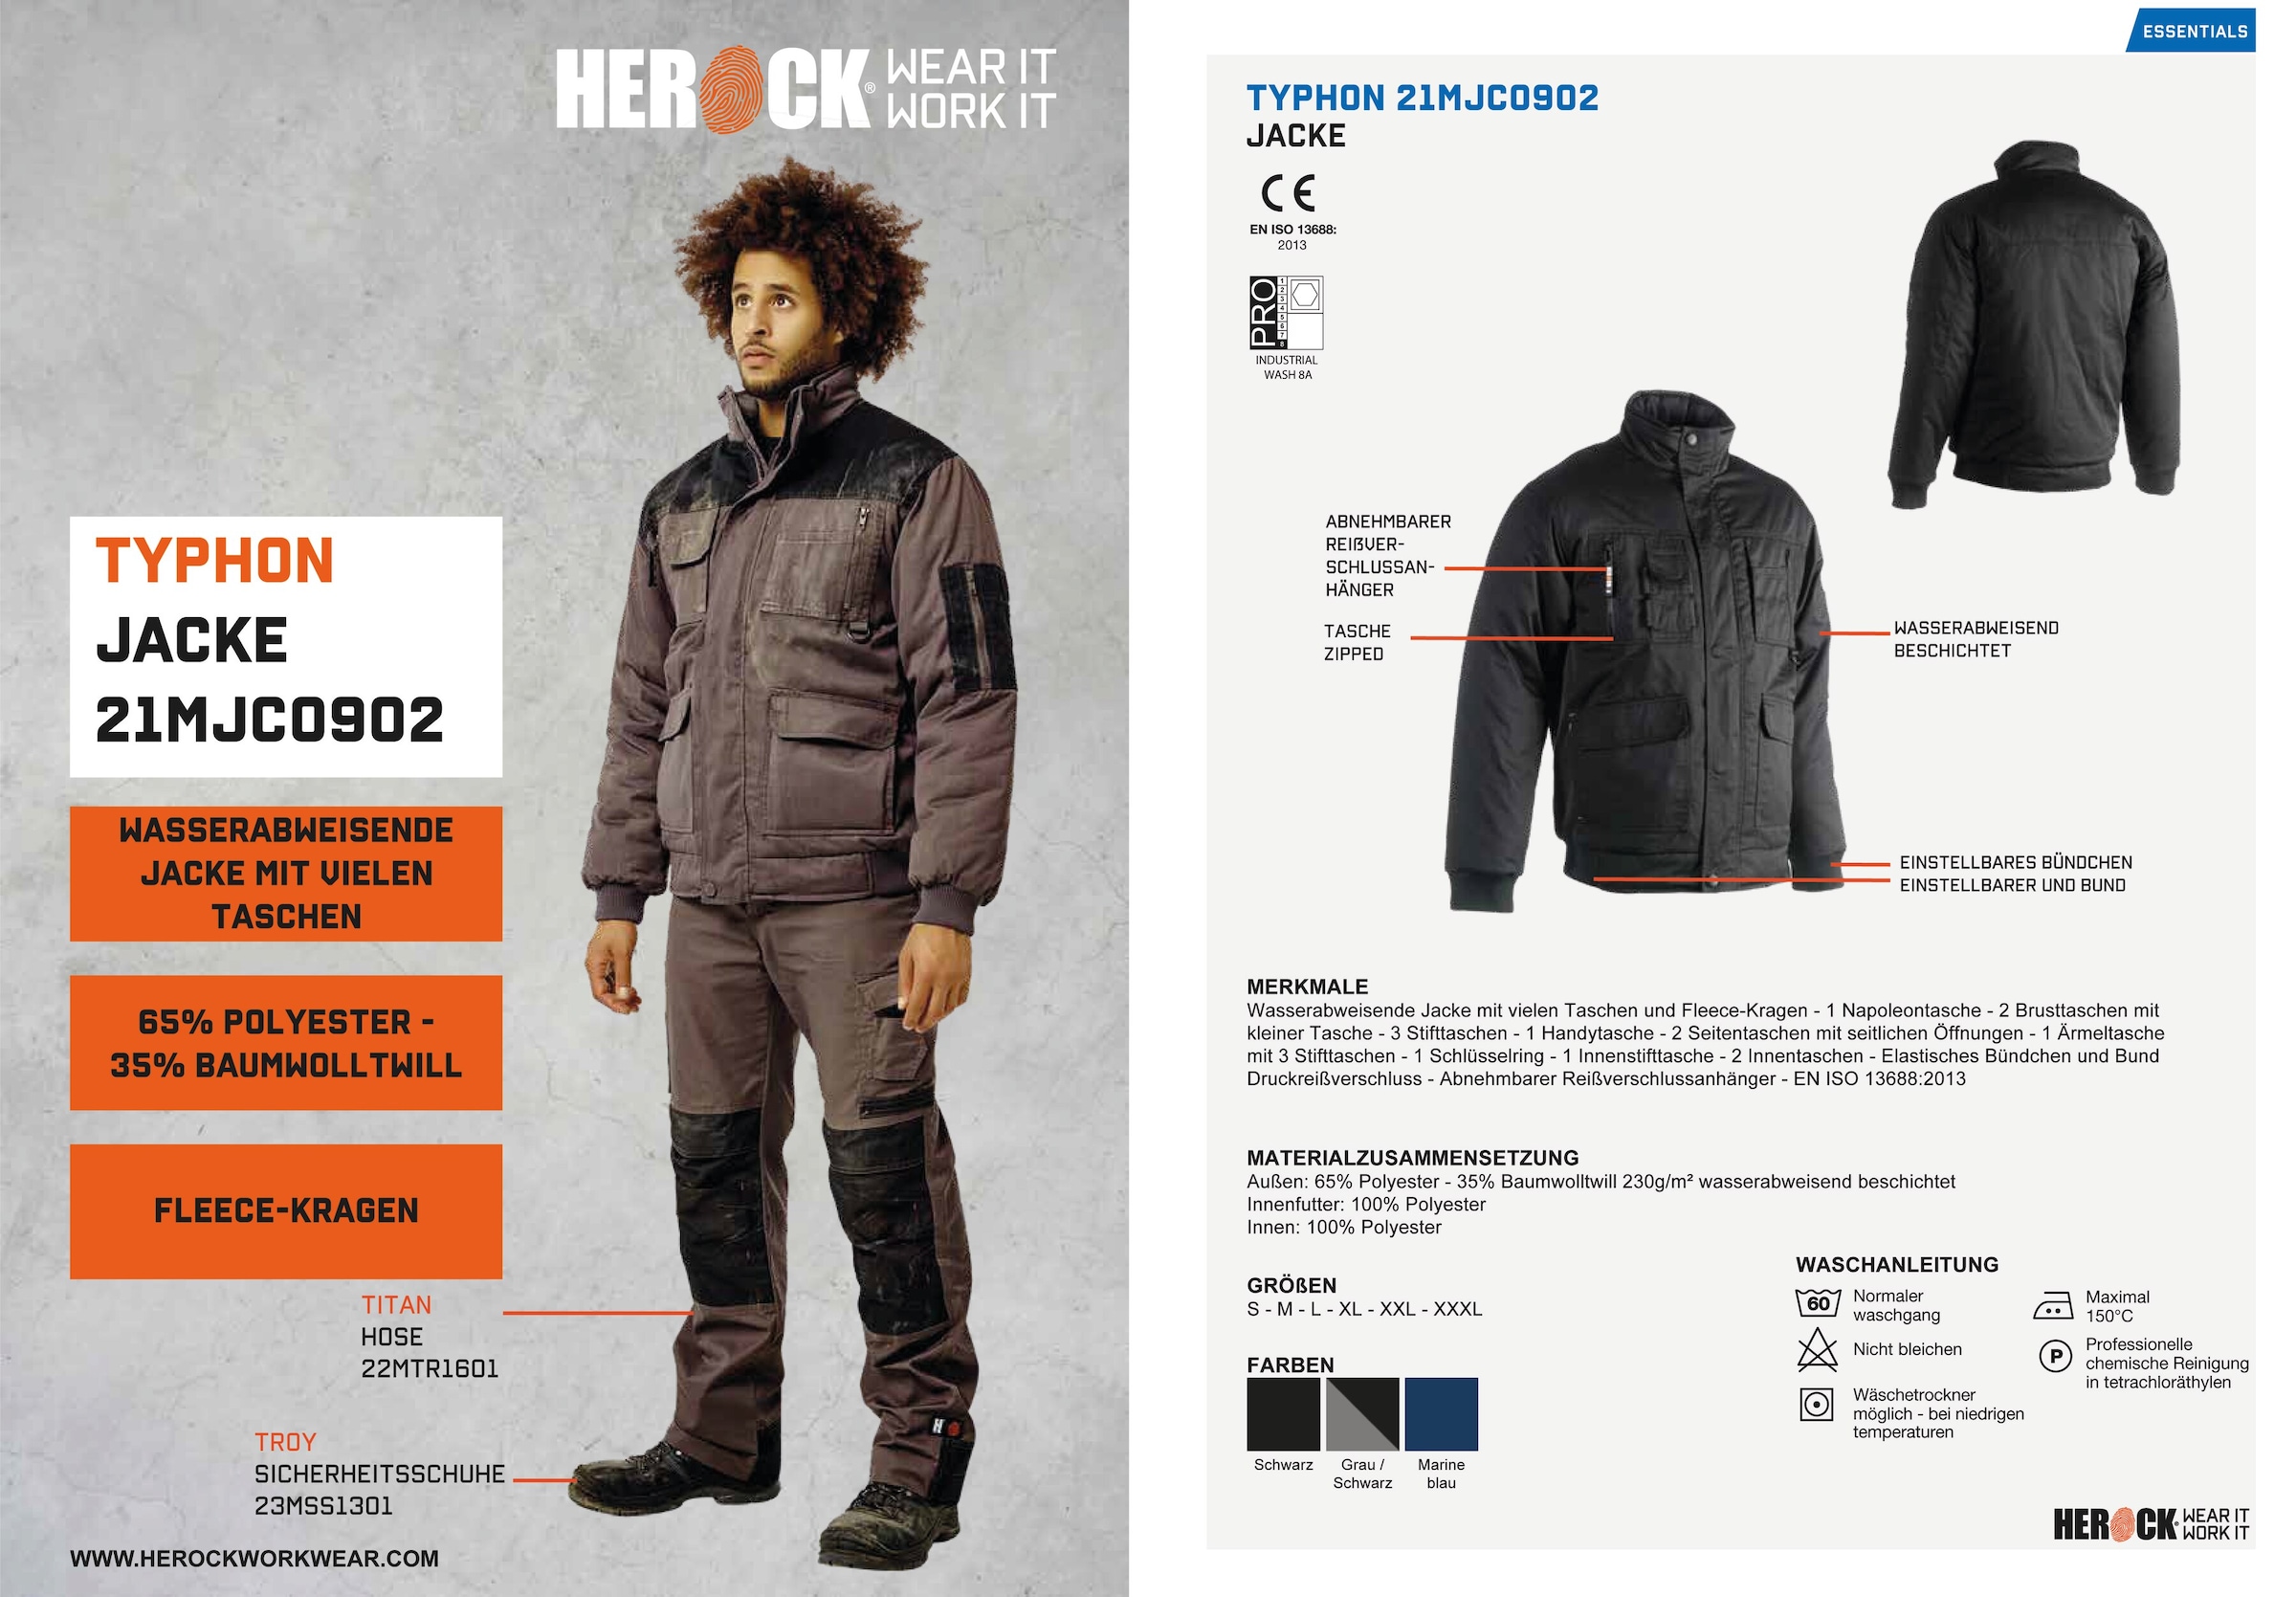 Fleece-Kragen, Taschen, Wasserabweisend Arbeitsjacke Jacke«, mit robust, »Typhon viele online bestellen Herock viele Farben